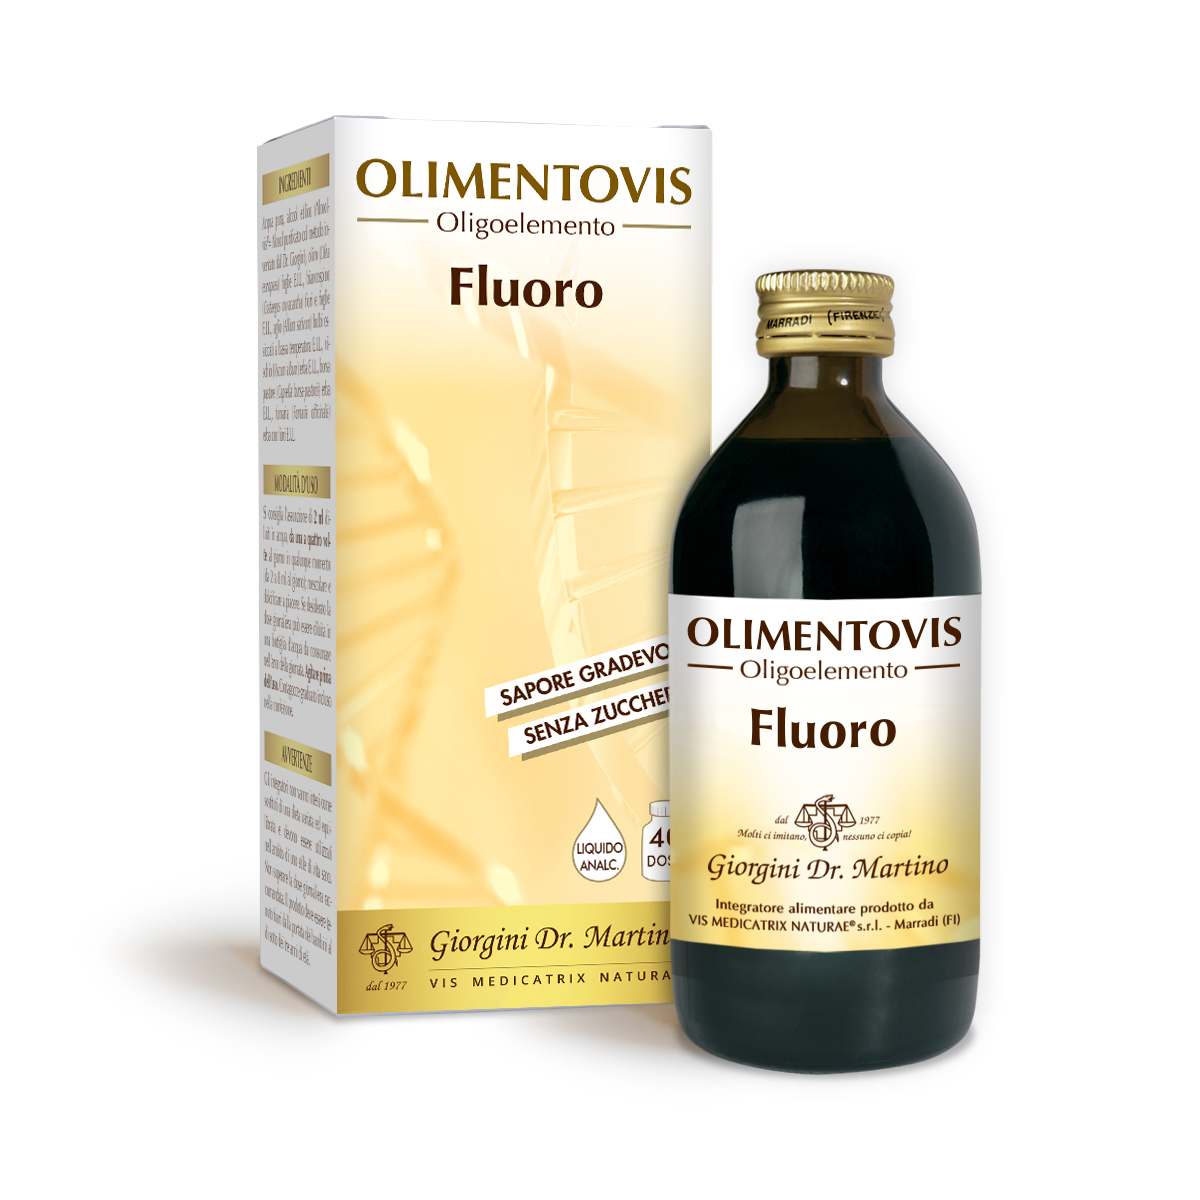 FLUORO Olimentovis 200 ml